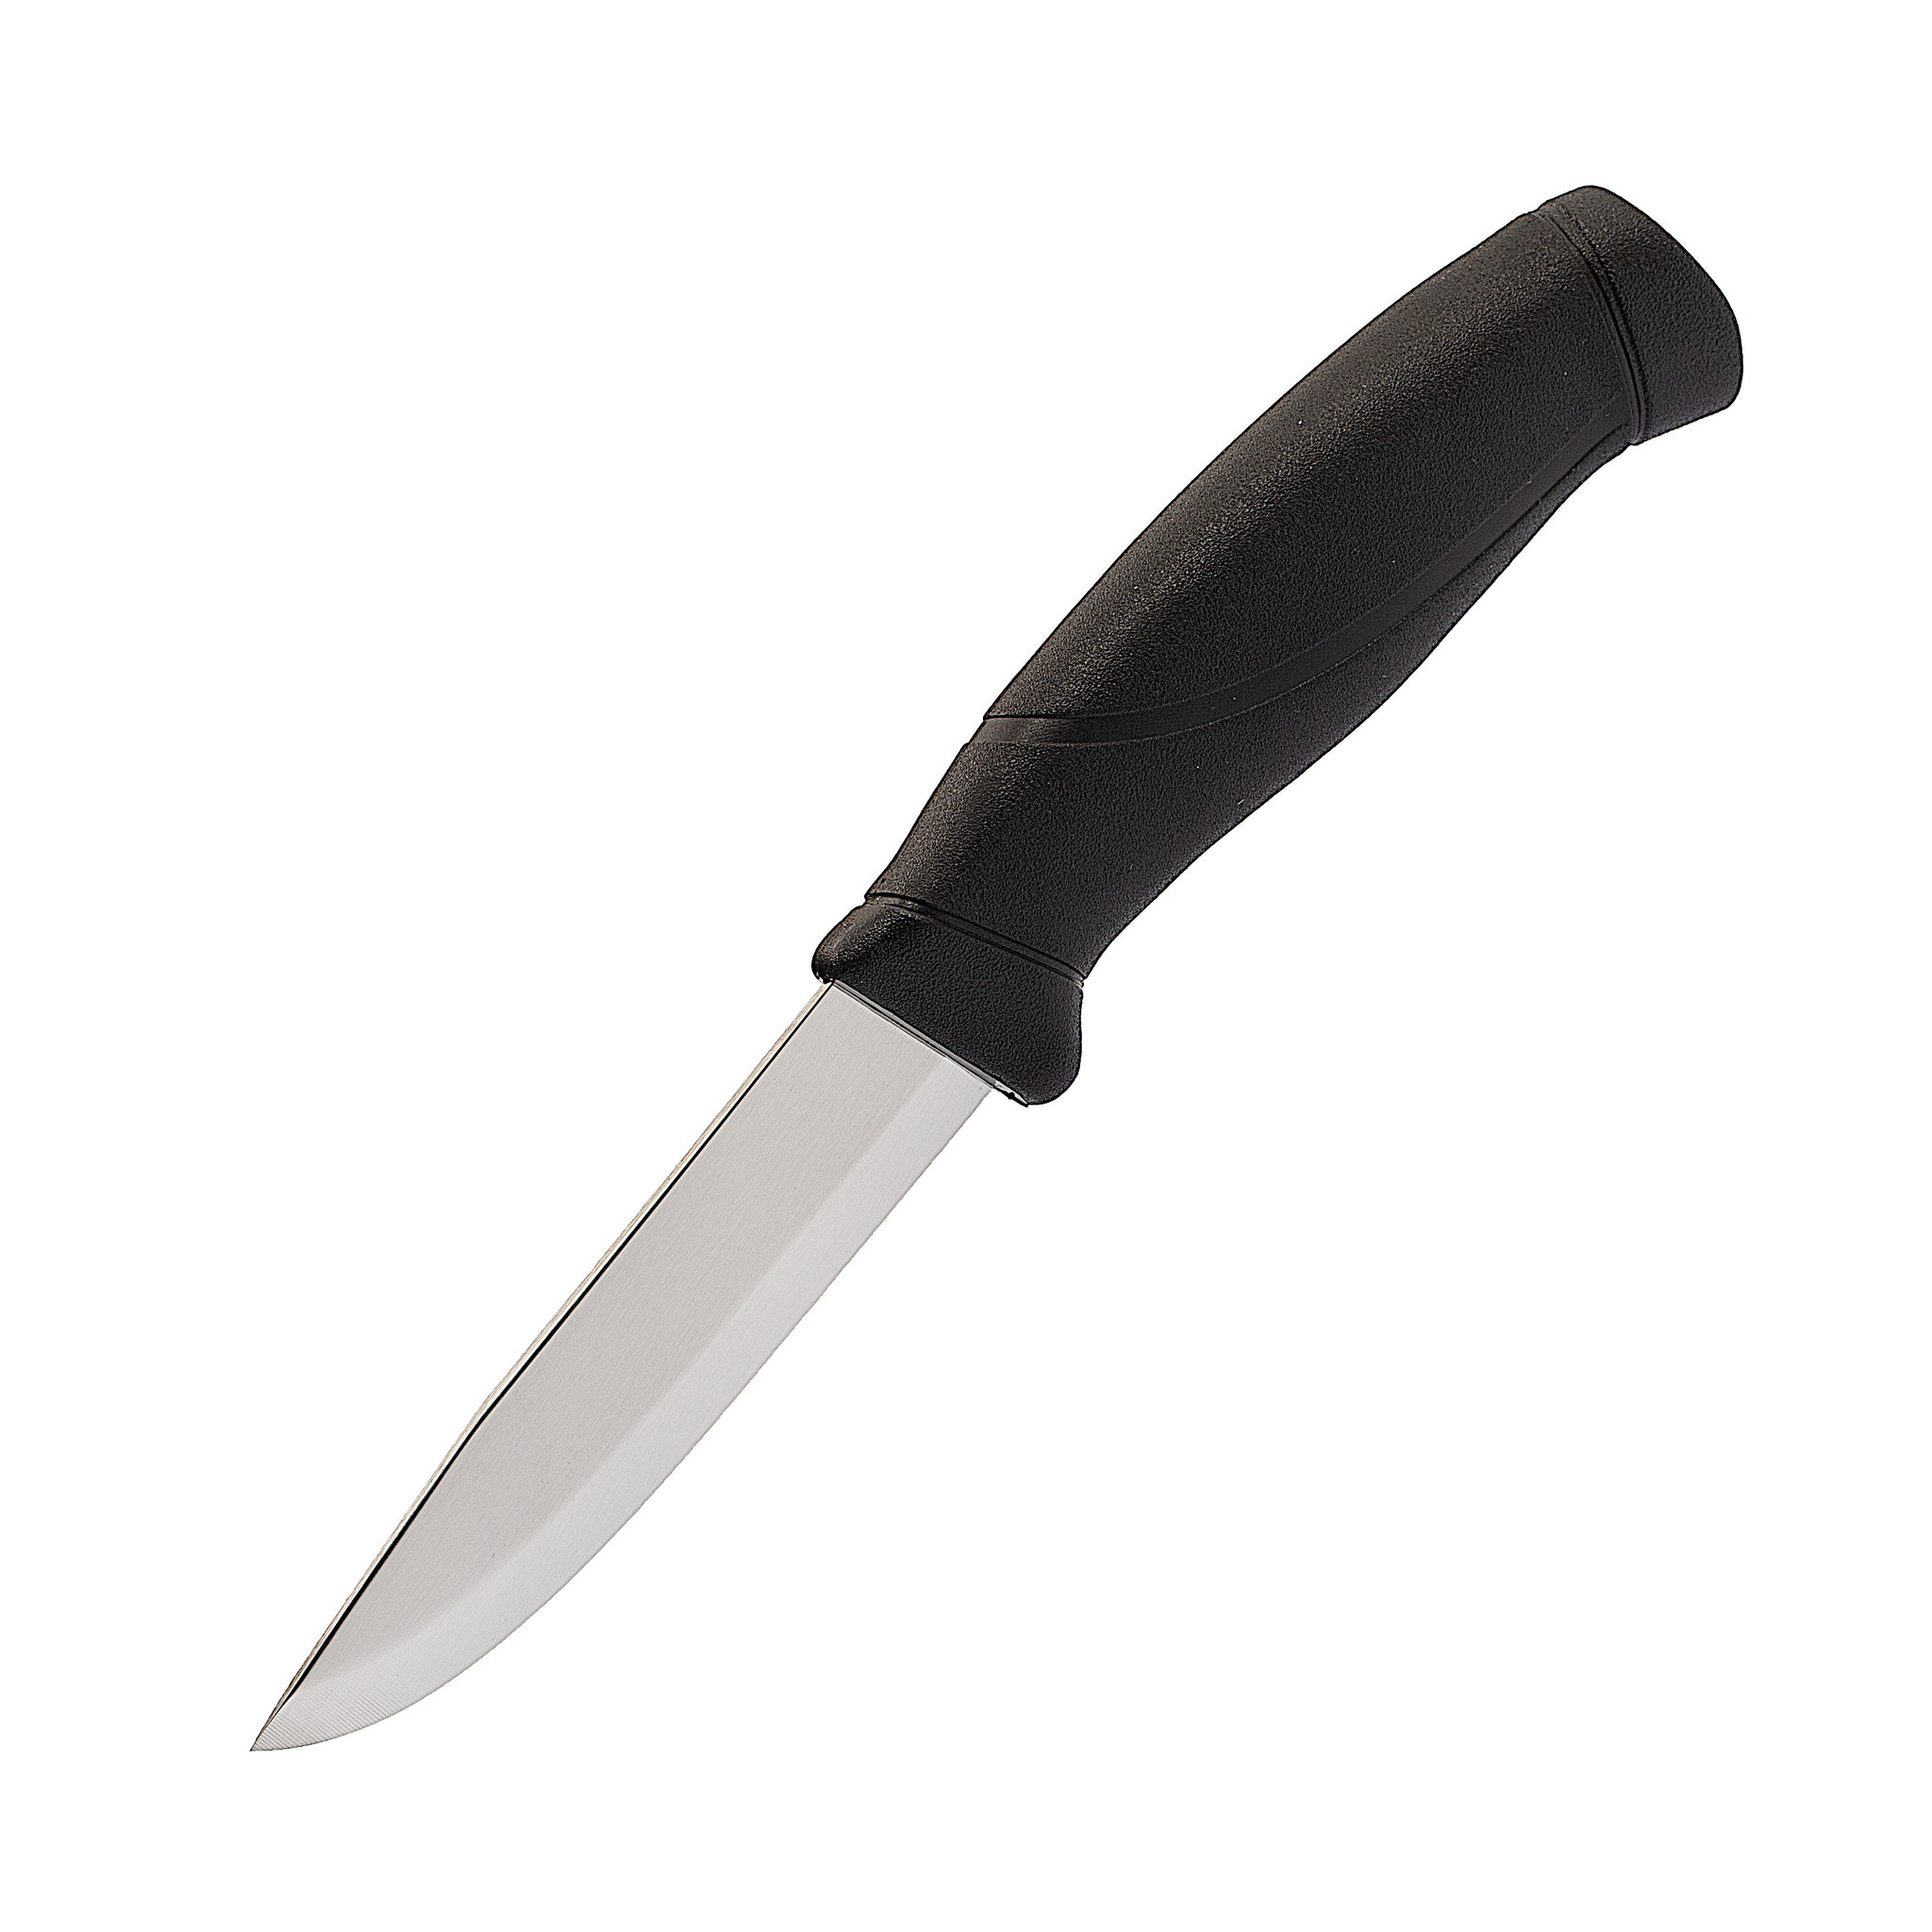 Нож с фиксированным лезвием Morakniv Companion Black, сталь Sandvik 12C27, рукоять пластик/резина - фото 1